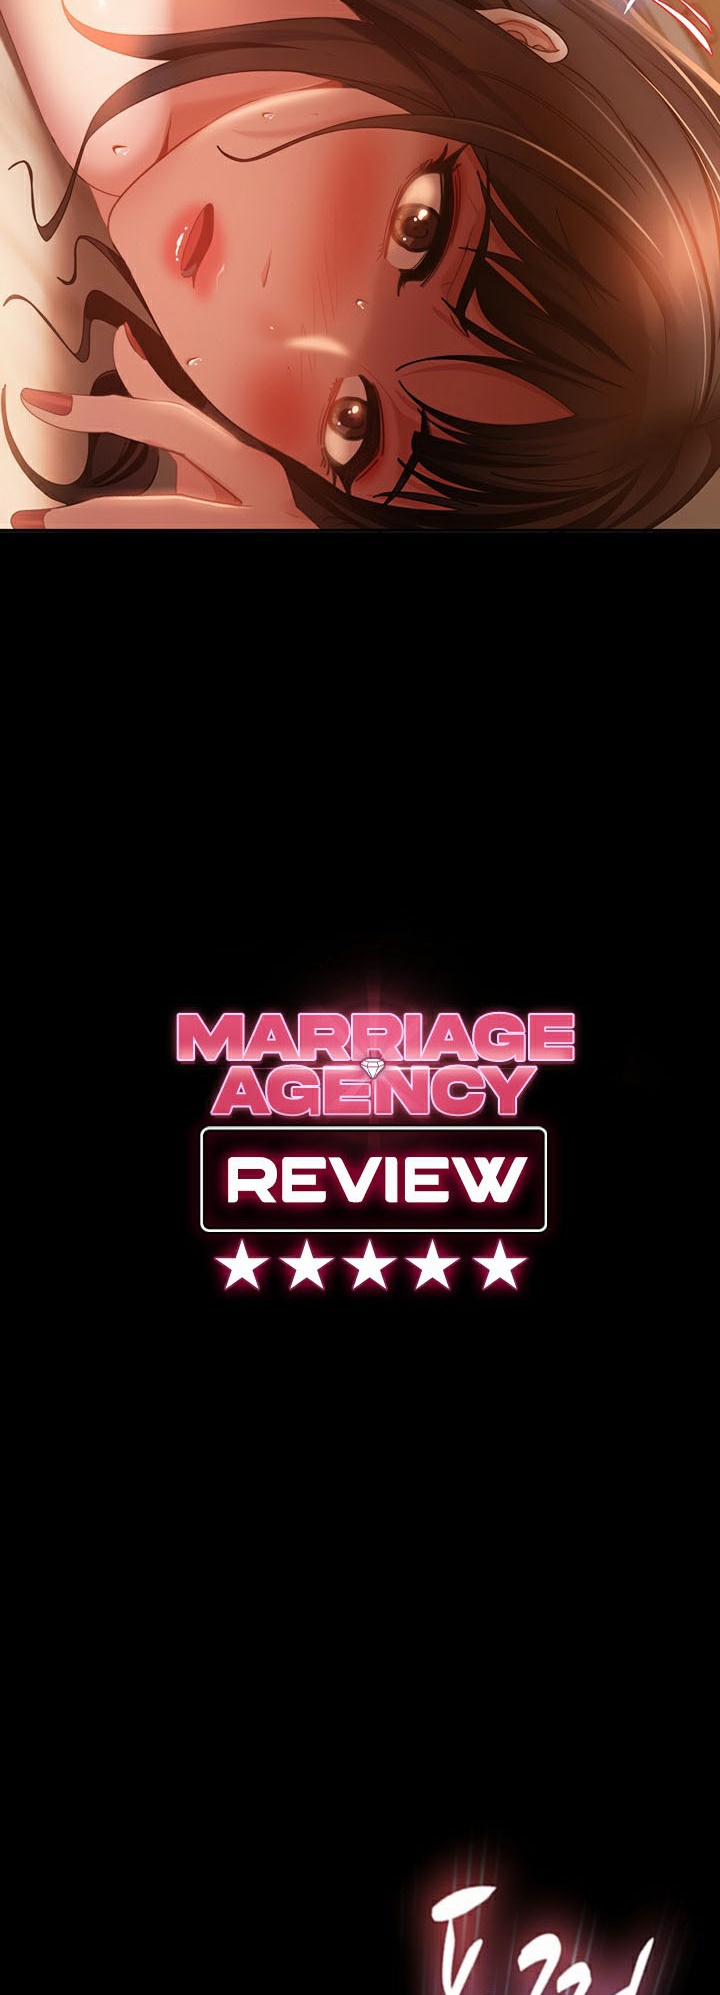 อ่านโดจิน เรื่อง Marriage Agency Review 38 04